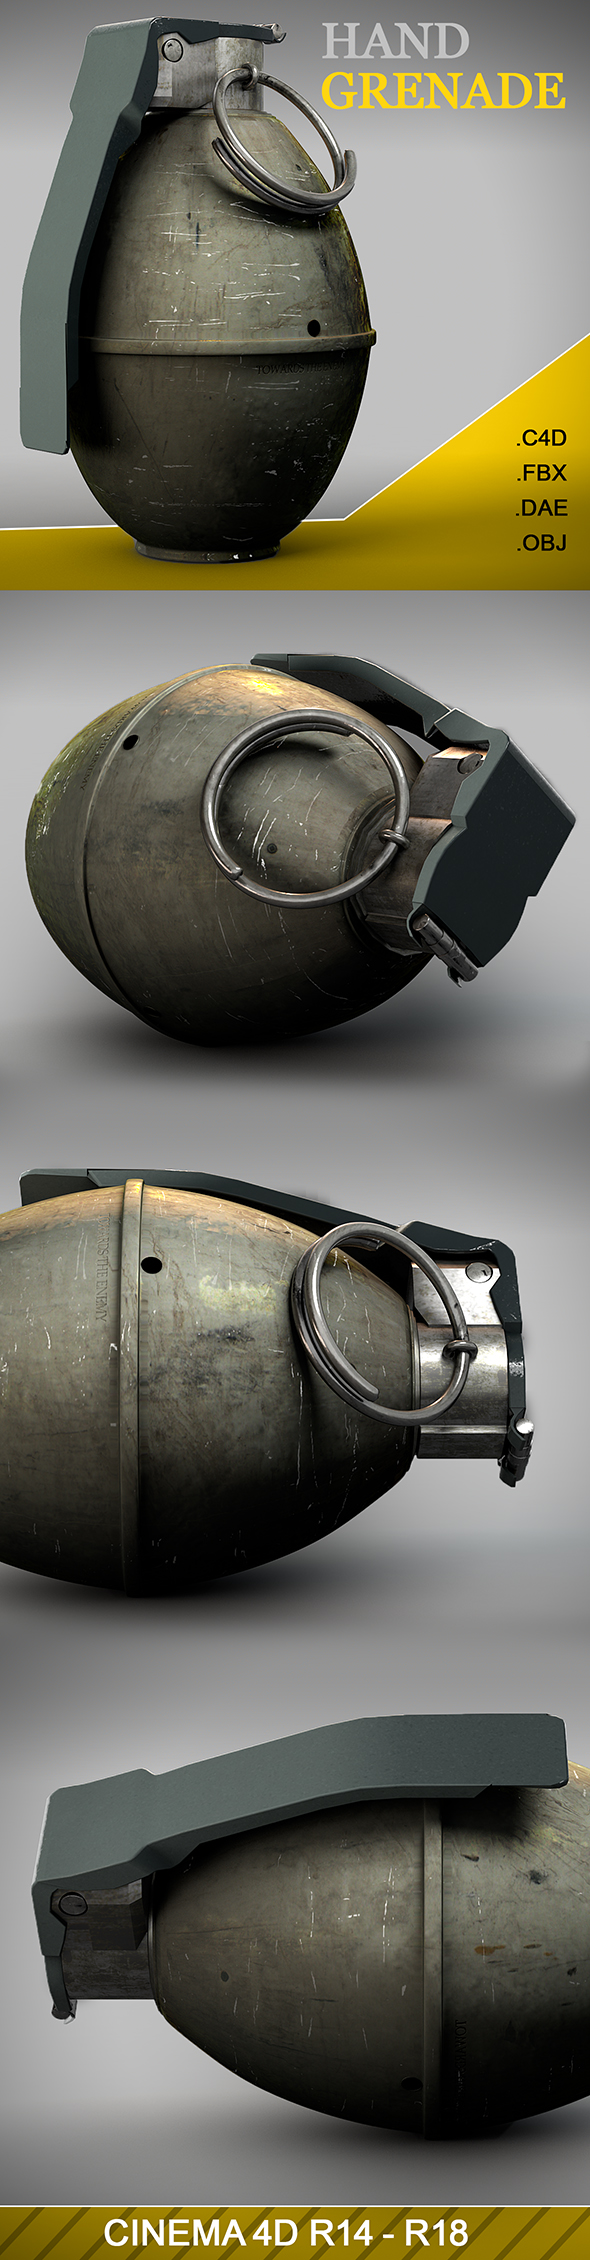 Hand Grenade 3D - 3Docean 19440303